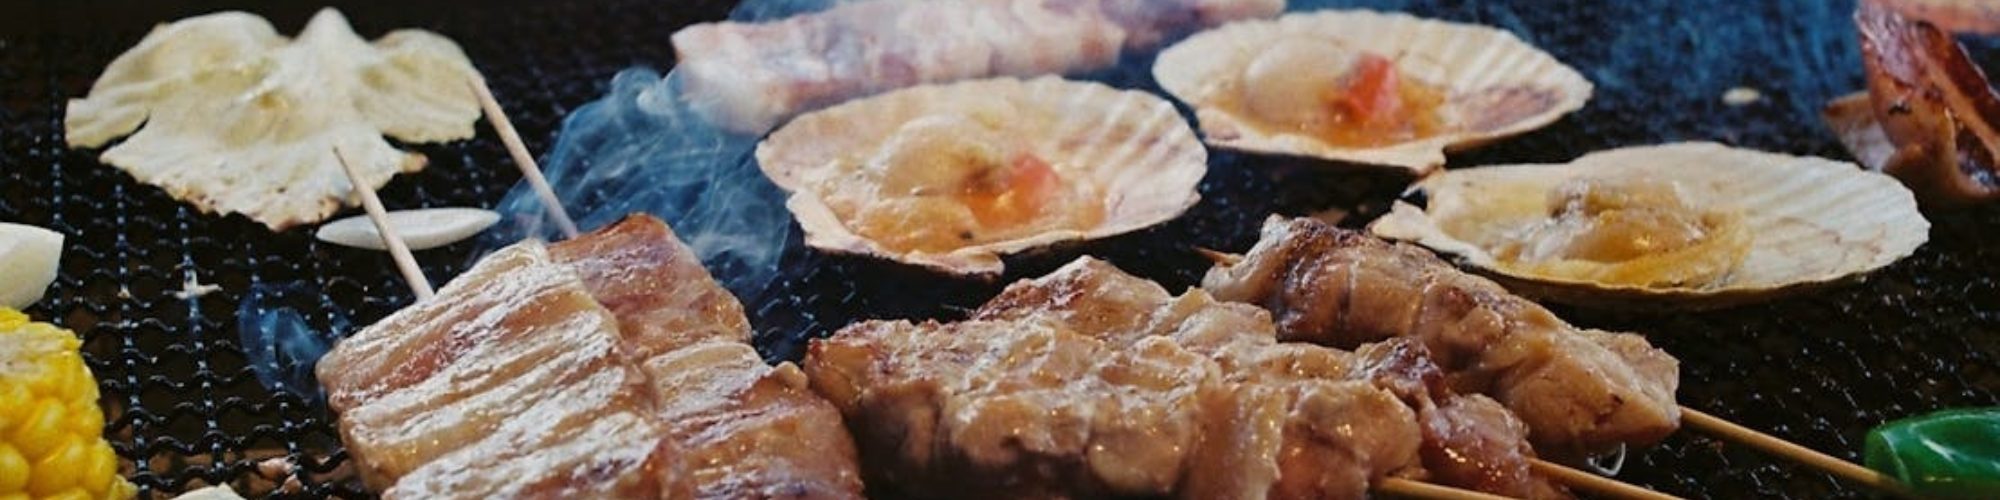 Korean Barbeque